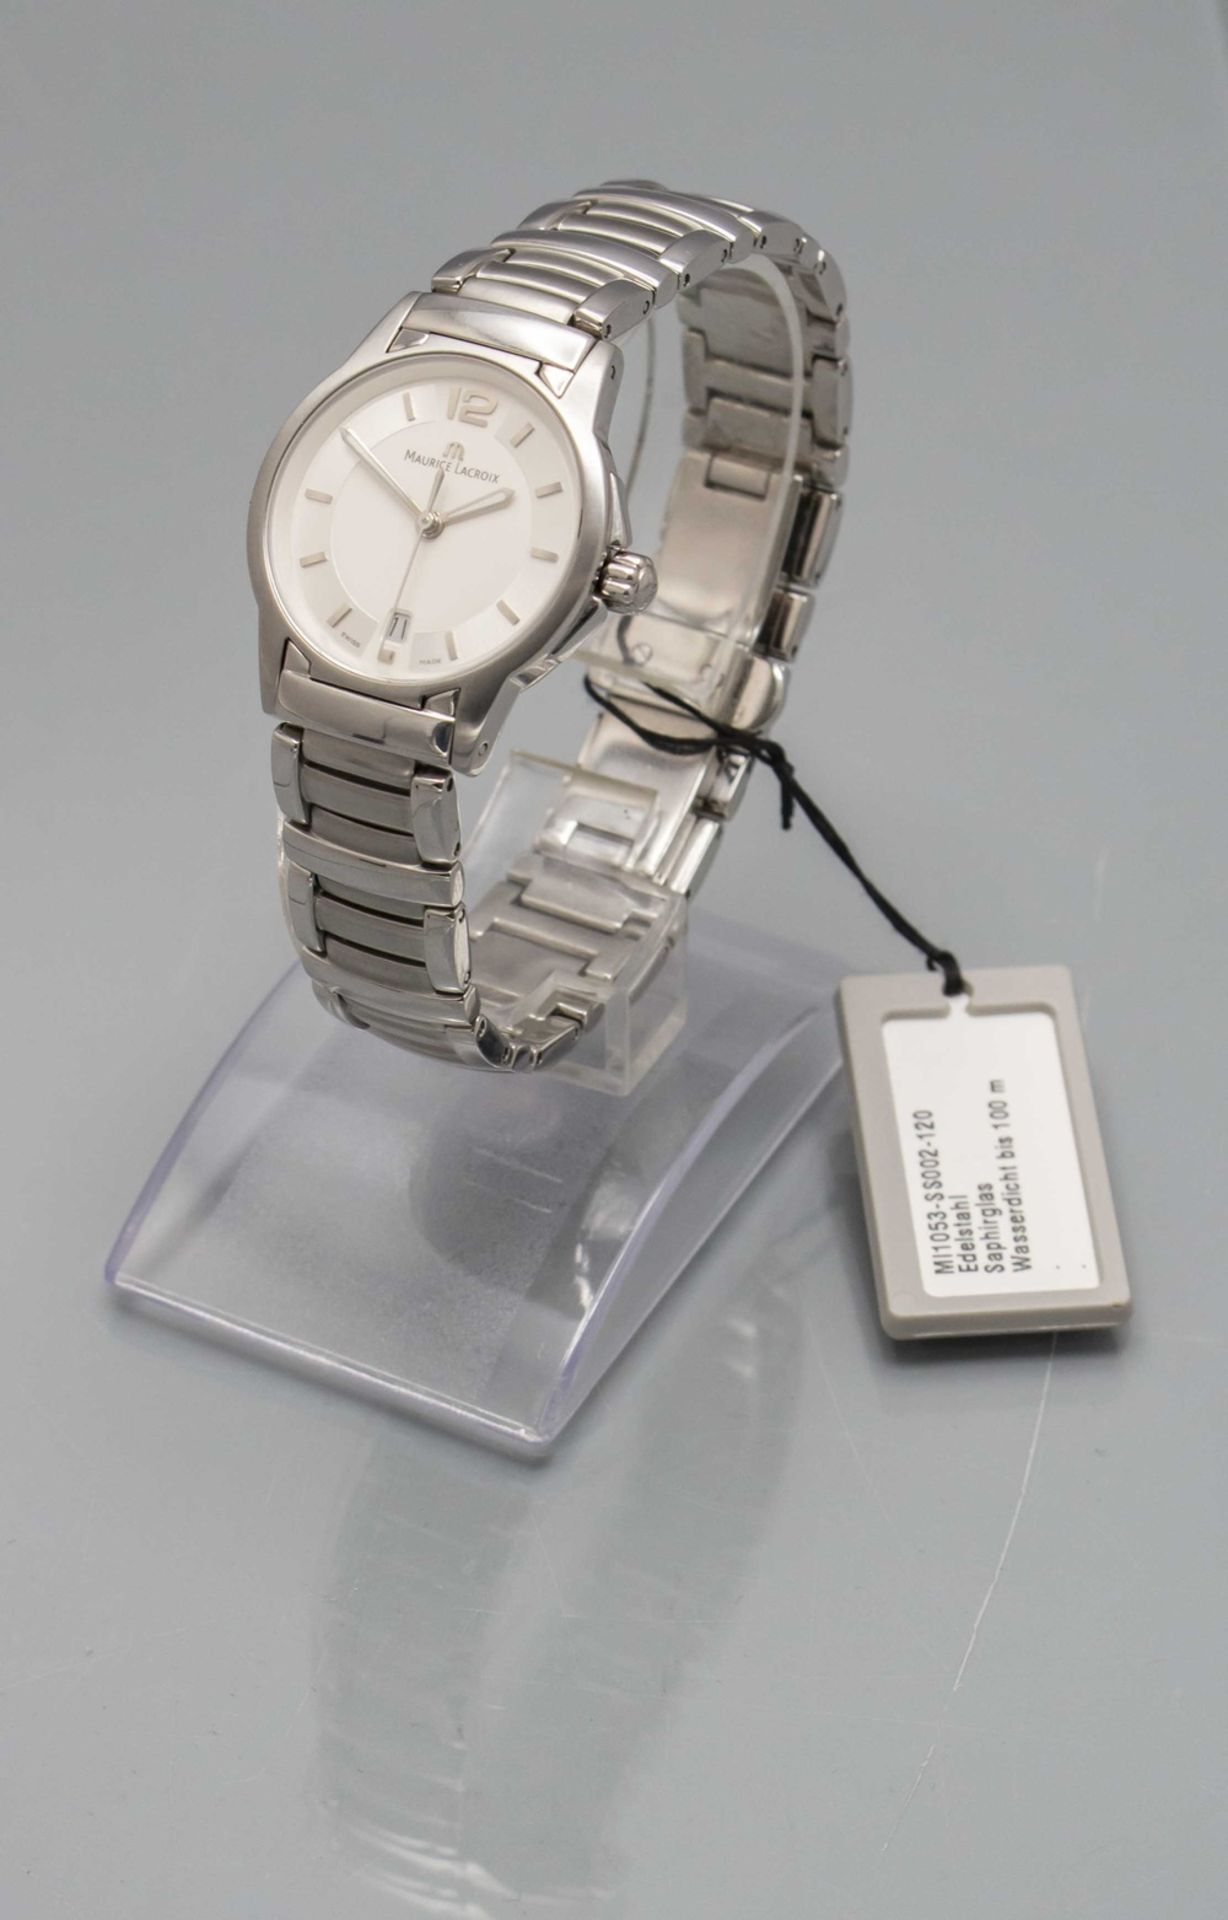 Damenarmbanduhr / A ladies wristwatch, Maurice Lacroix, Switzerland, mit Originalbox - Bild 2 aus 6